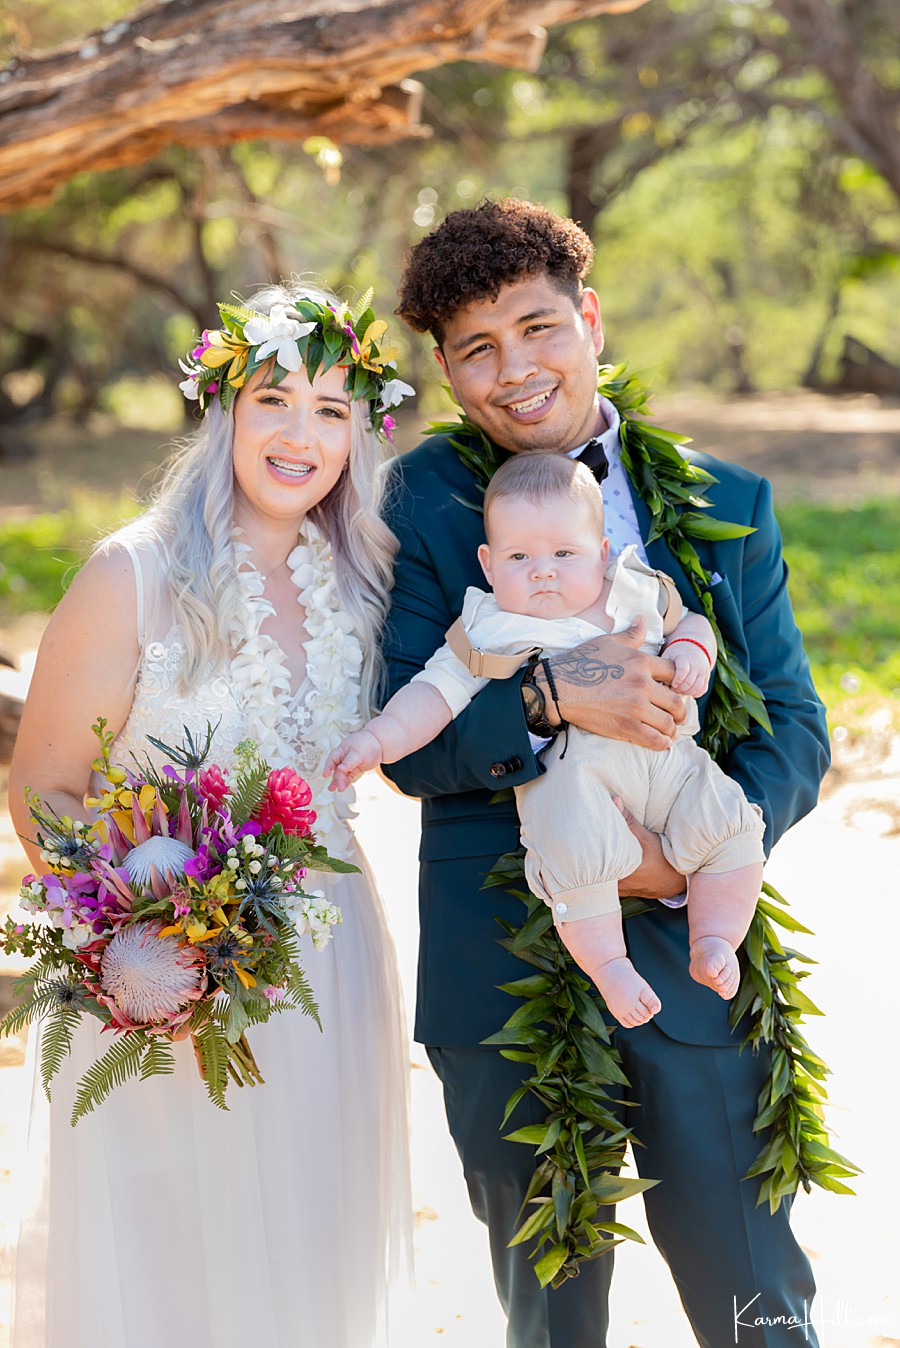 Wedding photography in Hawaii
